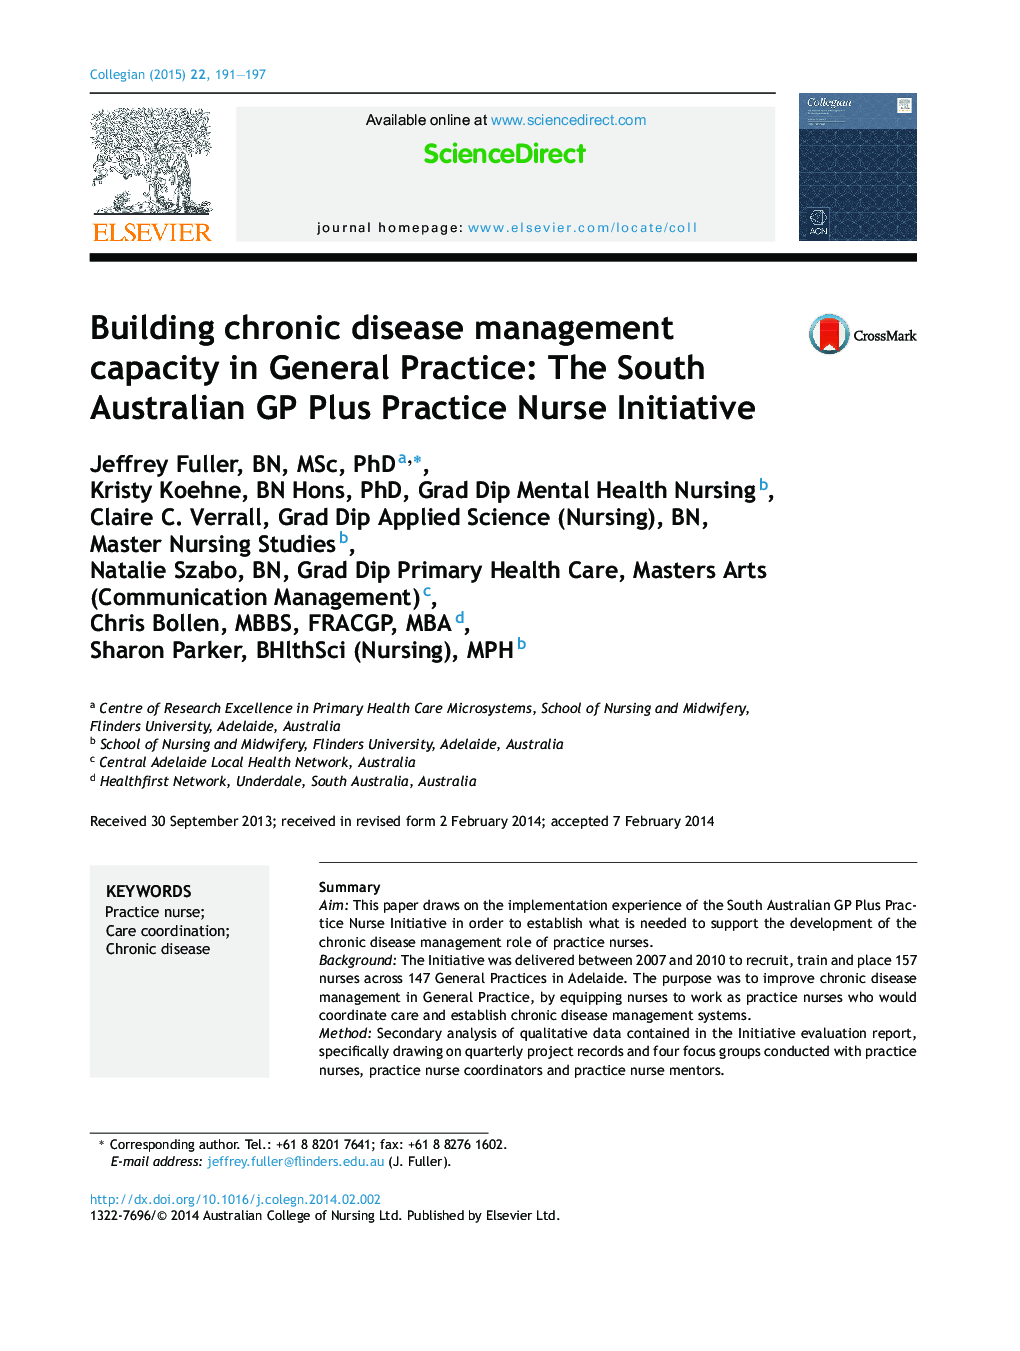 ظرفیت سازی مدیریت بیماری های مزمن در تمرین عمومی: GP جنوب استرالیا بعلاوه ابتکار پرستار عمل